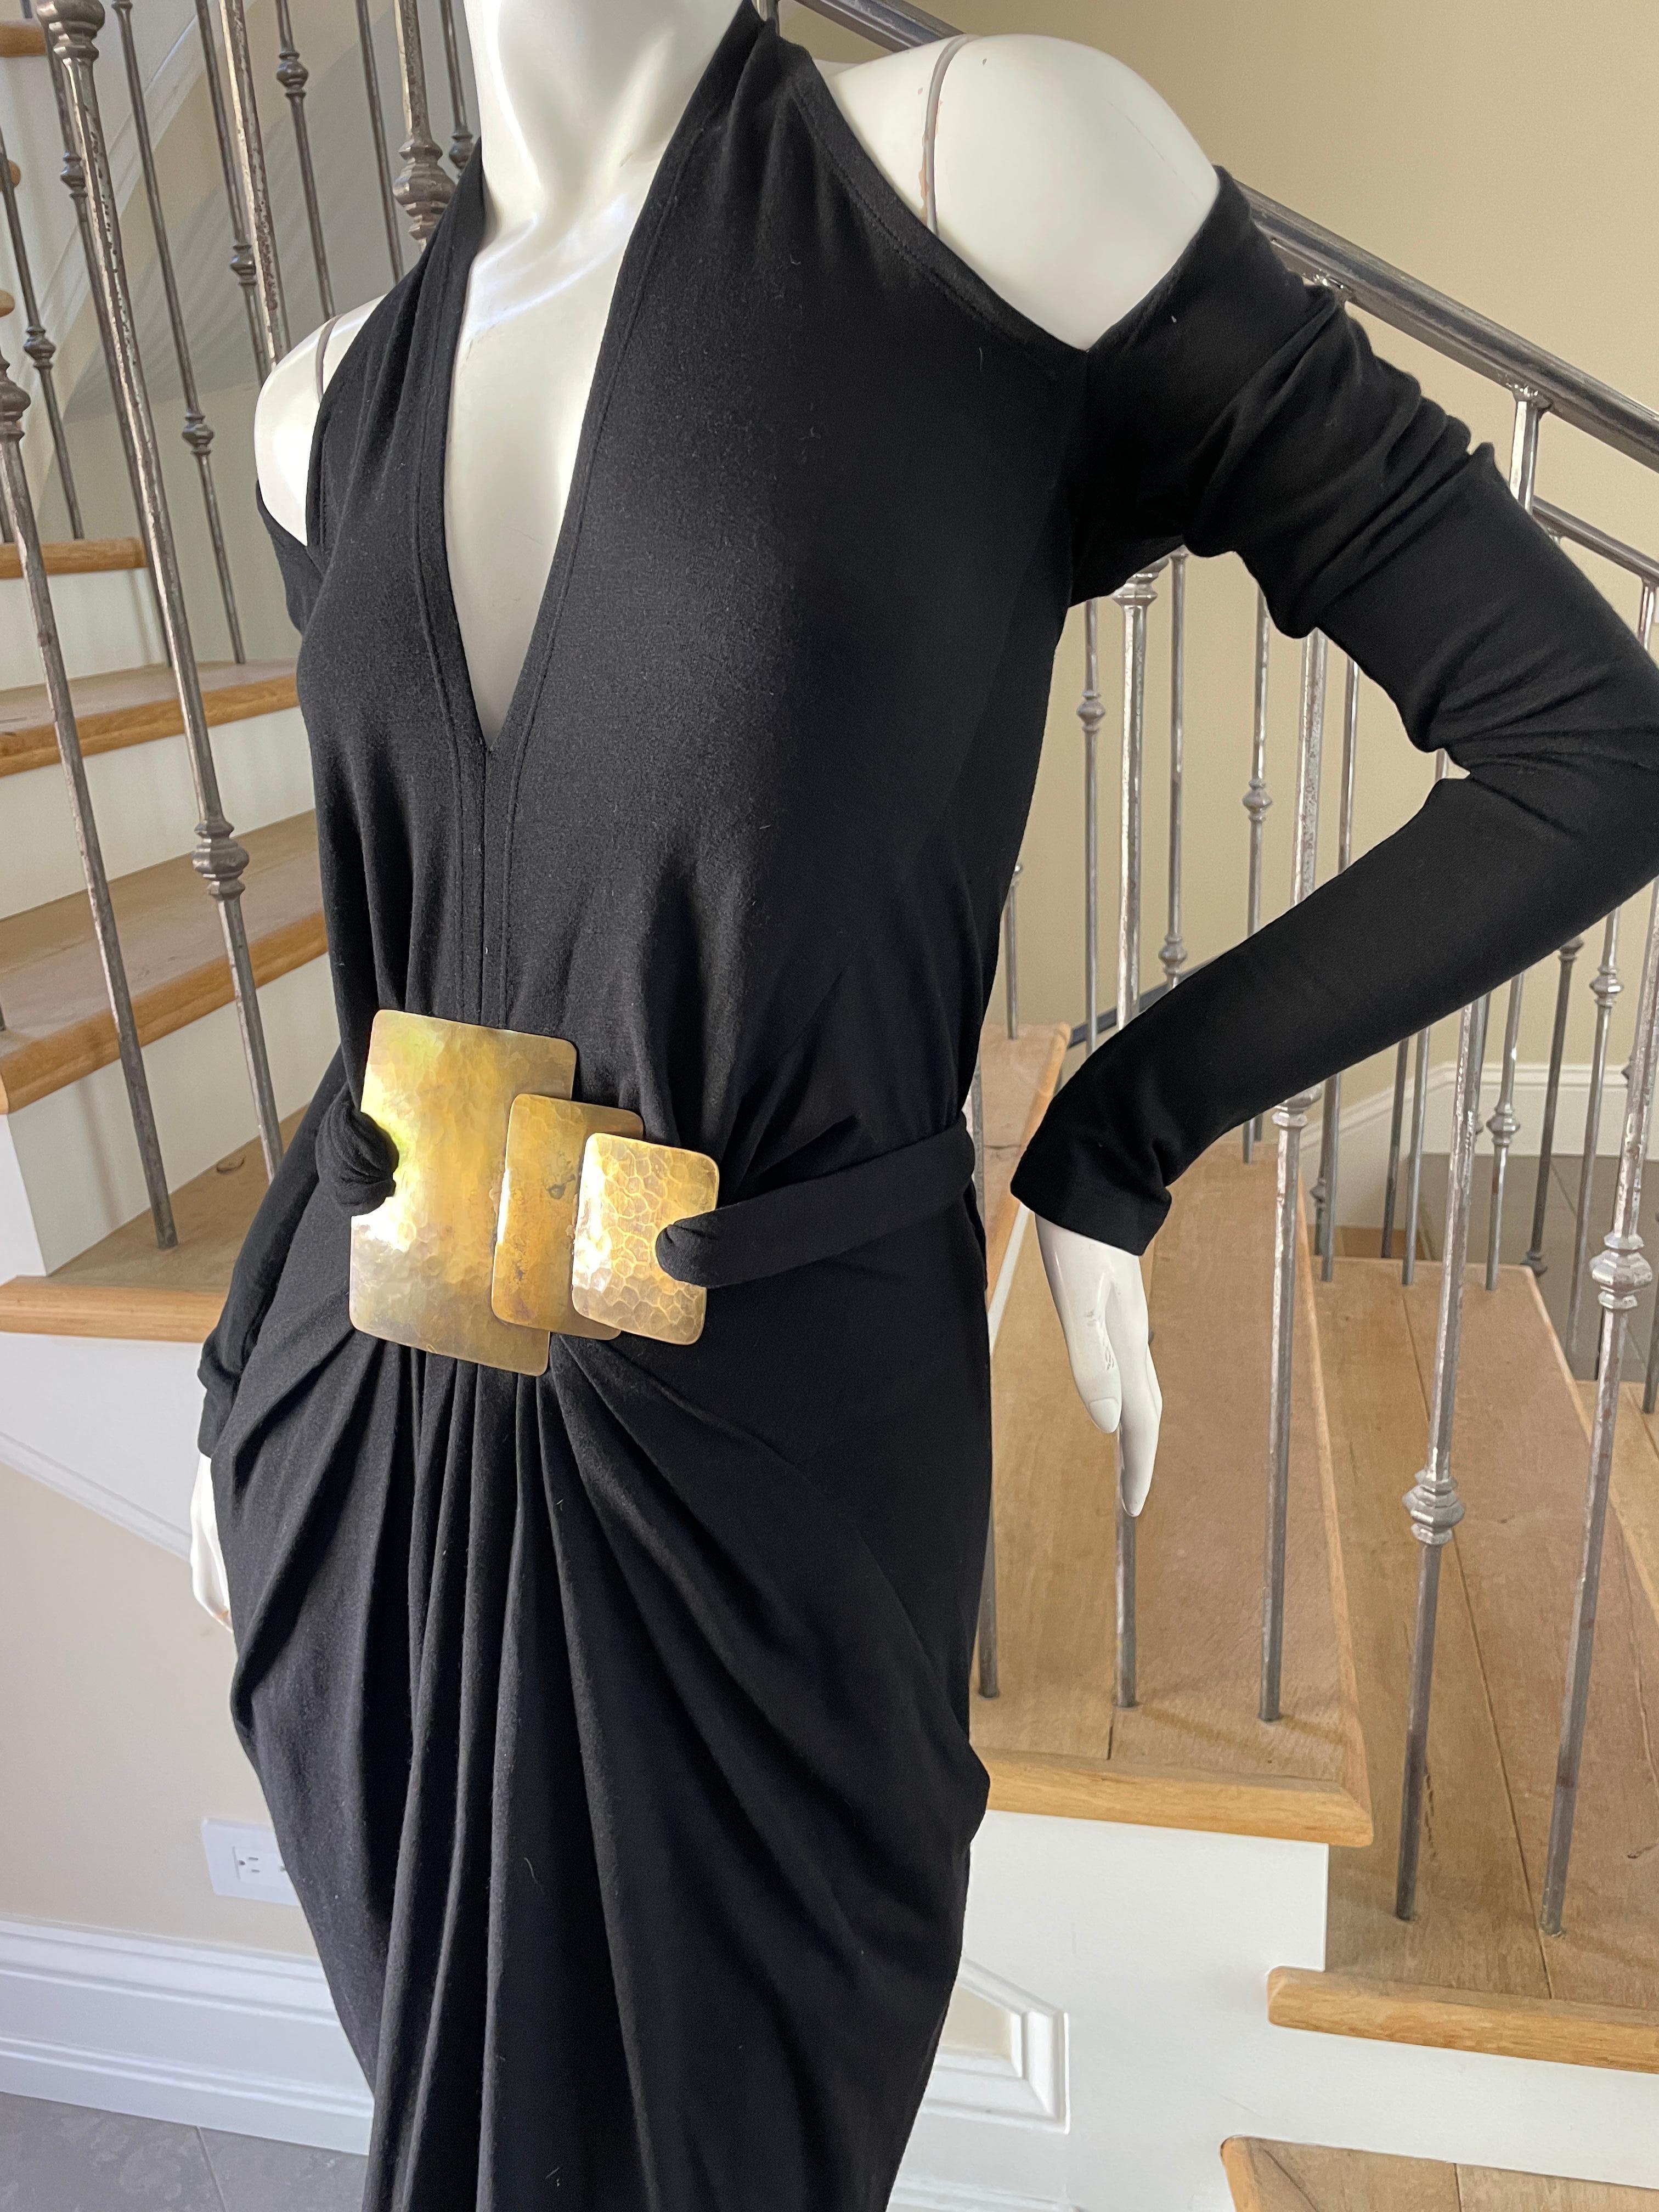 Donna Karan Cold Shoulder Evening Dress with Robert Lee Morris Belt Ornament 1